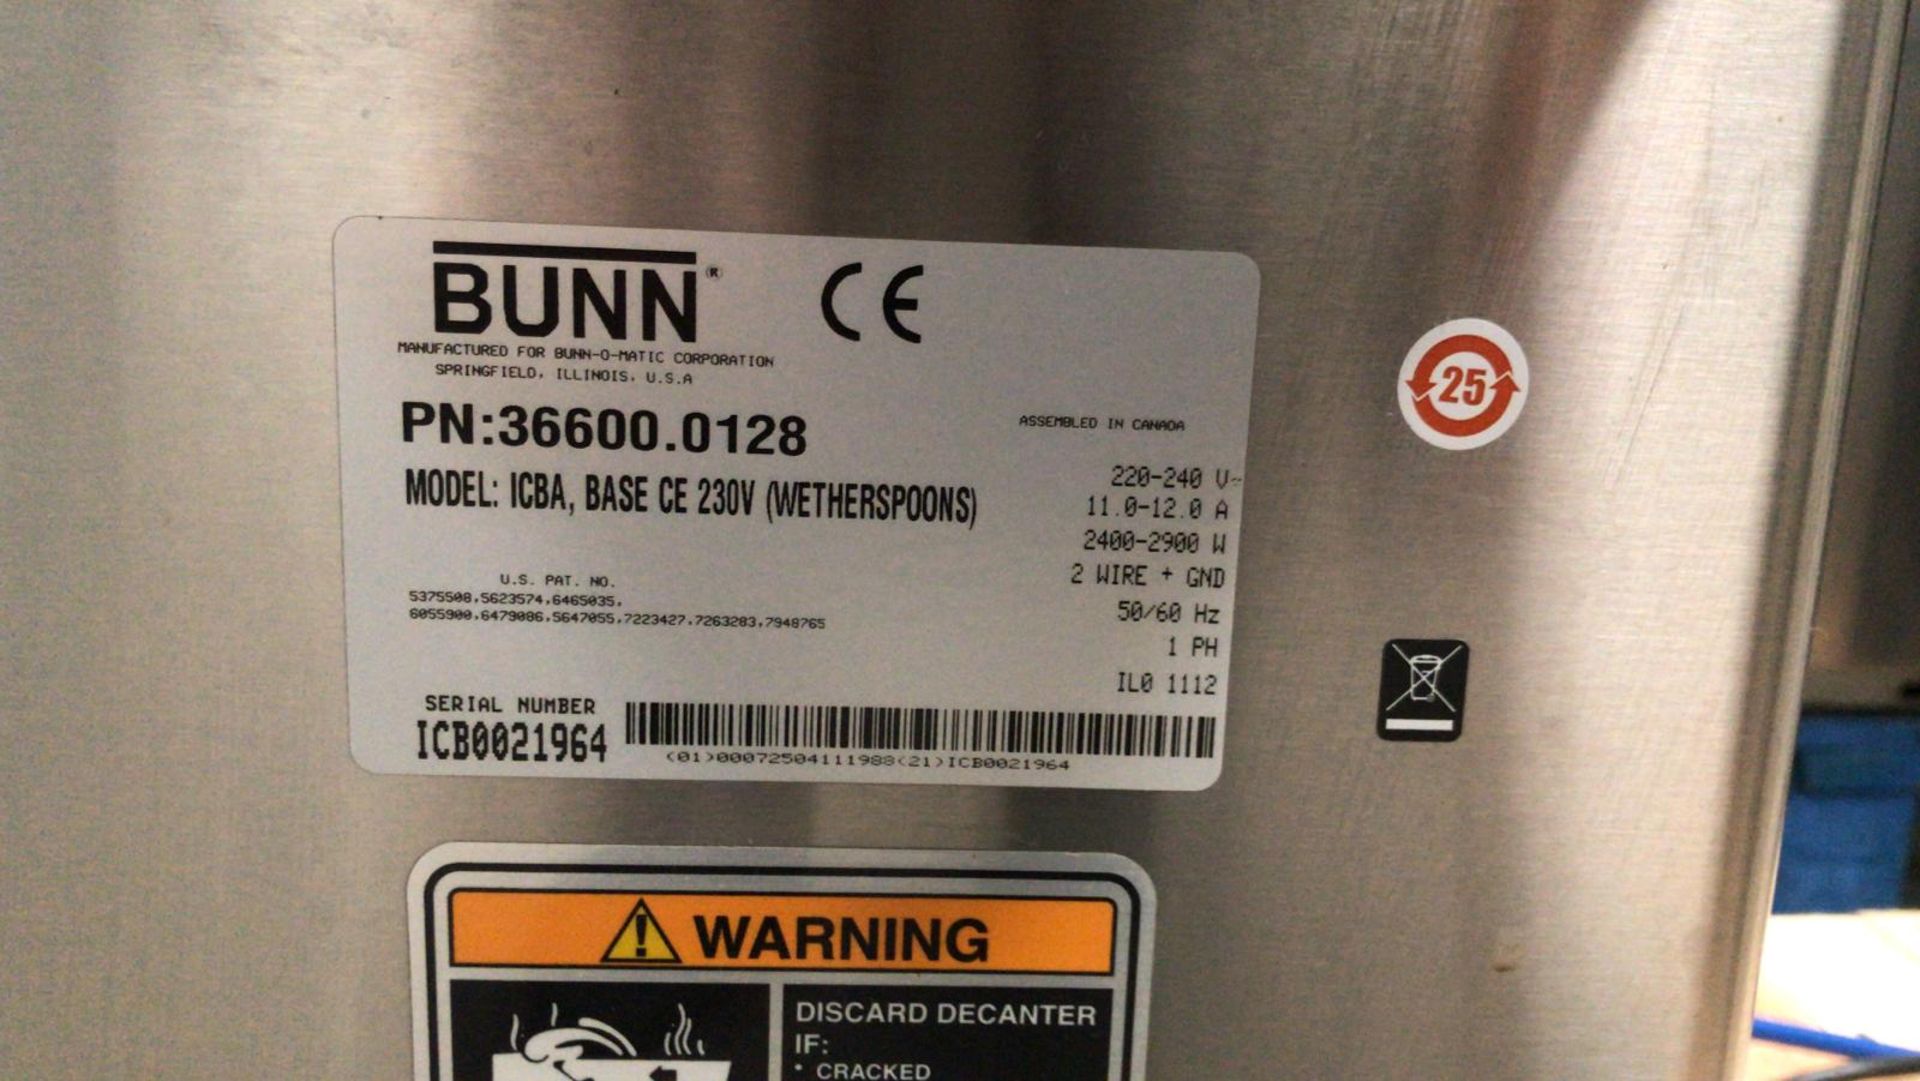 BUNN Hot Water Boiler - Image 4 of 4